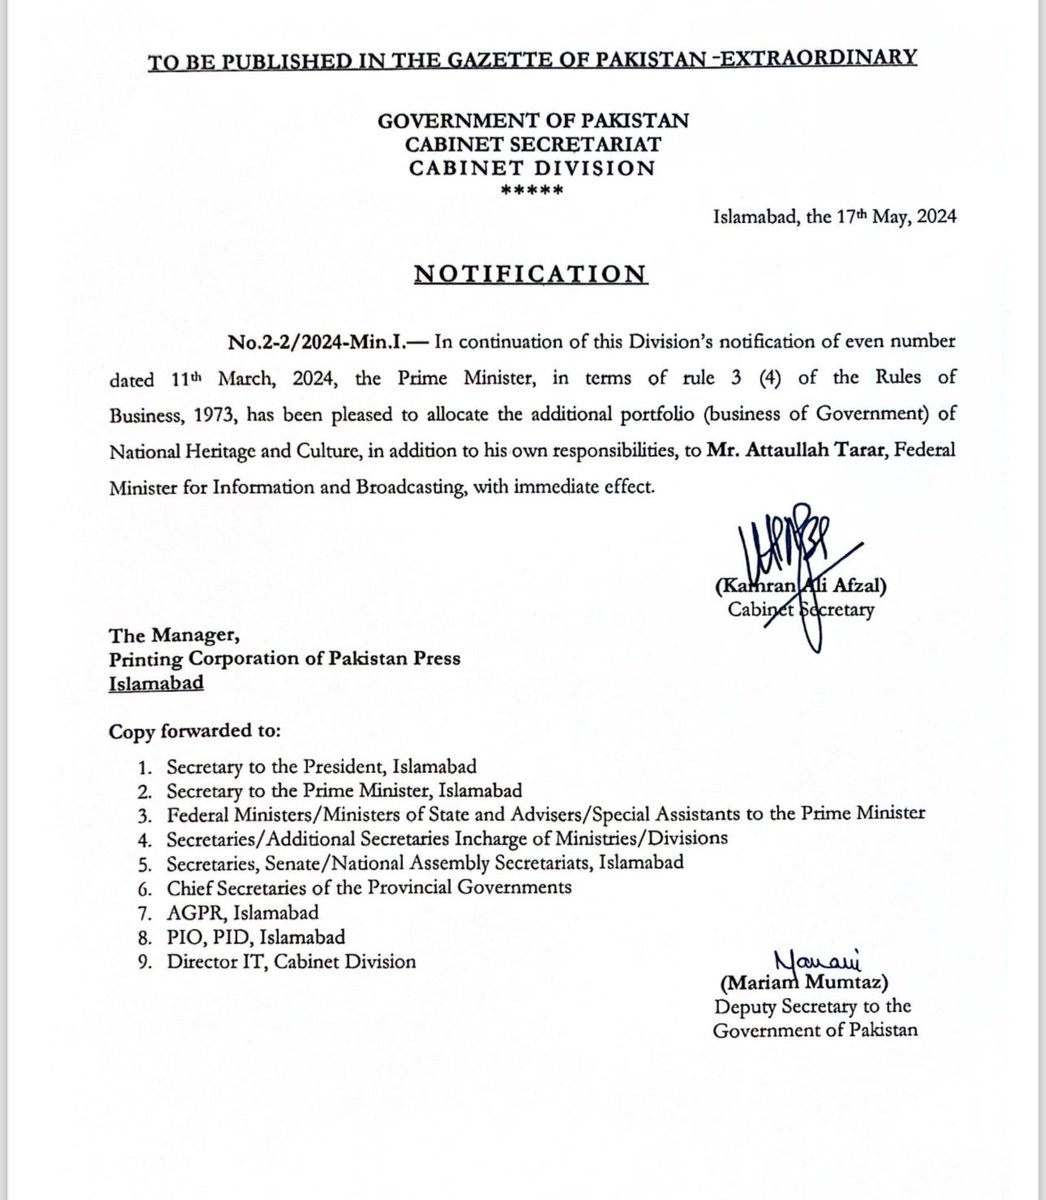 وفاقی وزیر اطلاعات عطاء تارڑ کو قومی ورثہ و ثقافت کا اضافی قلمدان تفویض کر دیا گیا۔ کابینہ ڈویژن نے وزیراعظم کی منظوری کے بعد نوٹیفیکیشن جاری کر دیا۔ @TararAttaullah